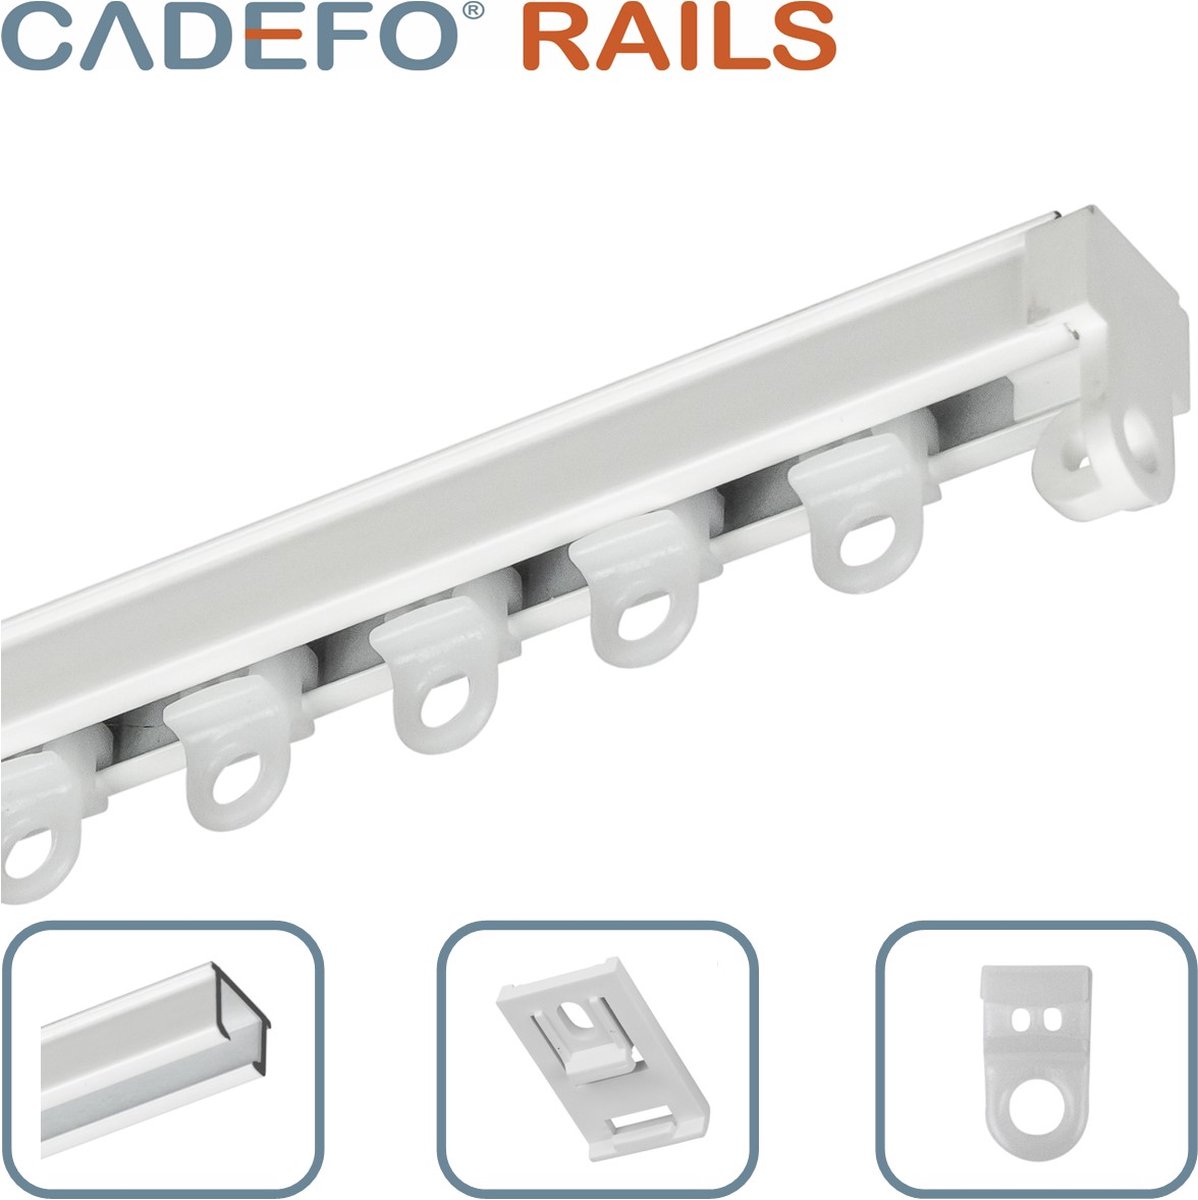 CADEFO RAILS (551 - 600 cm) Gordijnrails - Compleet op maat! - UIT 1 STUK - Leverbaar tot 6 meter - Plafondbevestiging - Lengte 586 cm